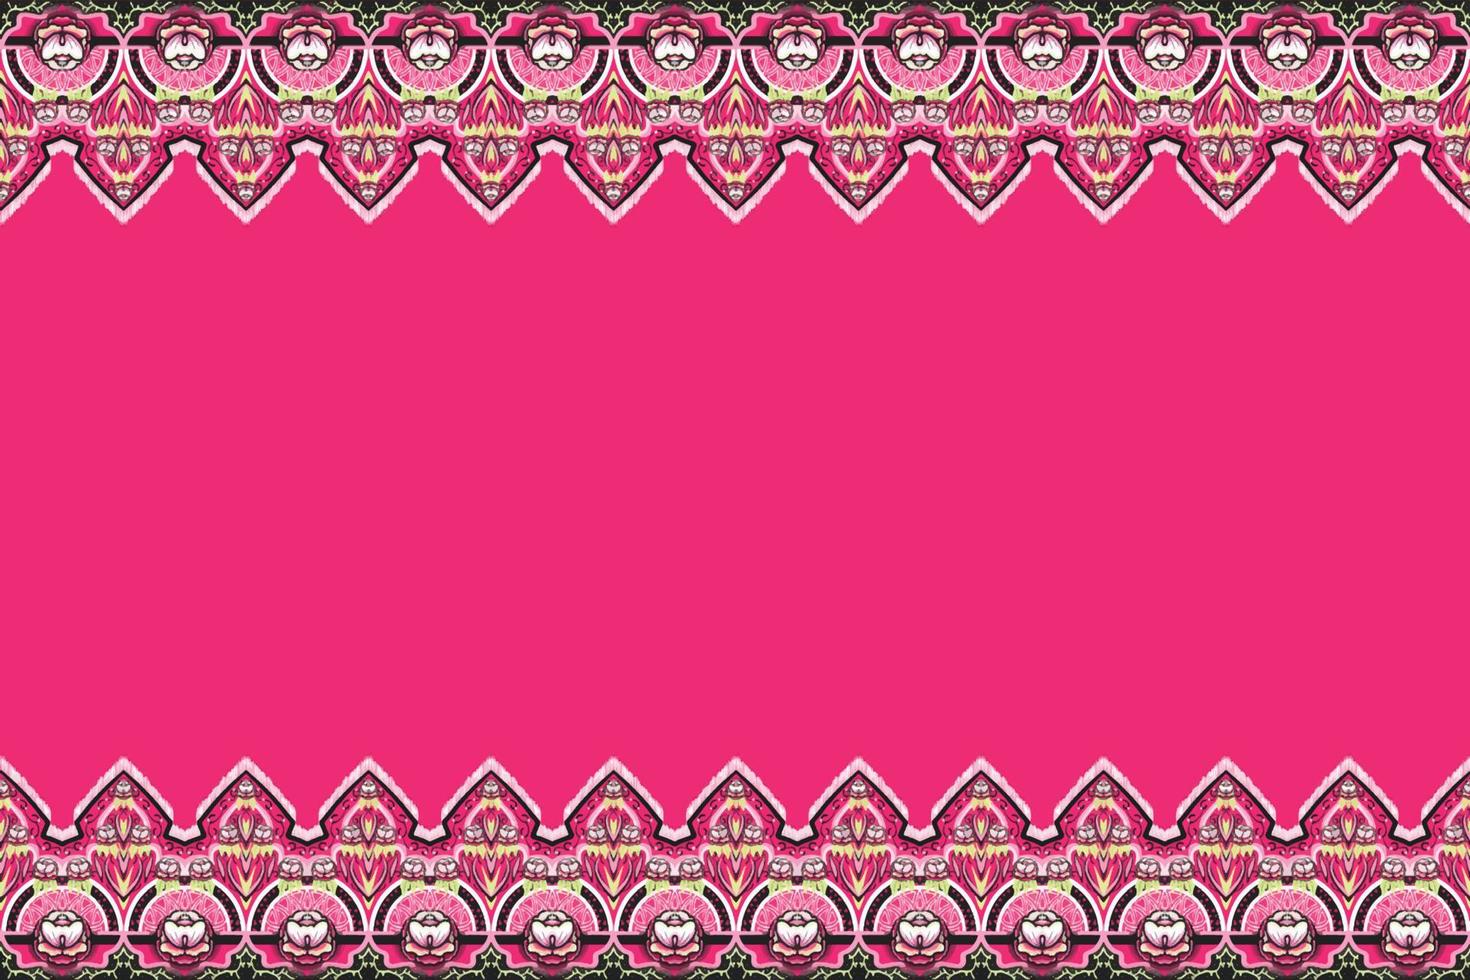 roze, groene, witte zwarte bloem op roze. geometrische etnische oosterse patroon traditioneel ontwerp voor achtergrond, tapijt, behang, kleding, verpakking, batik, stof, vector illustratie borduurstijl